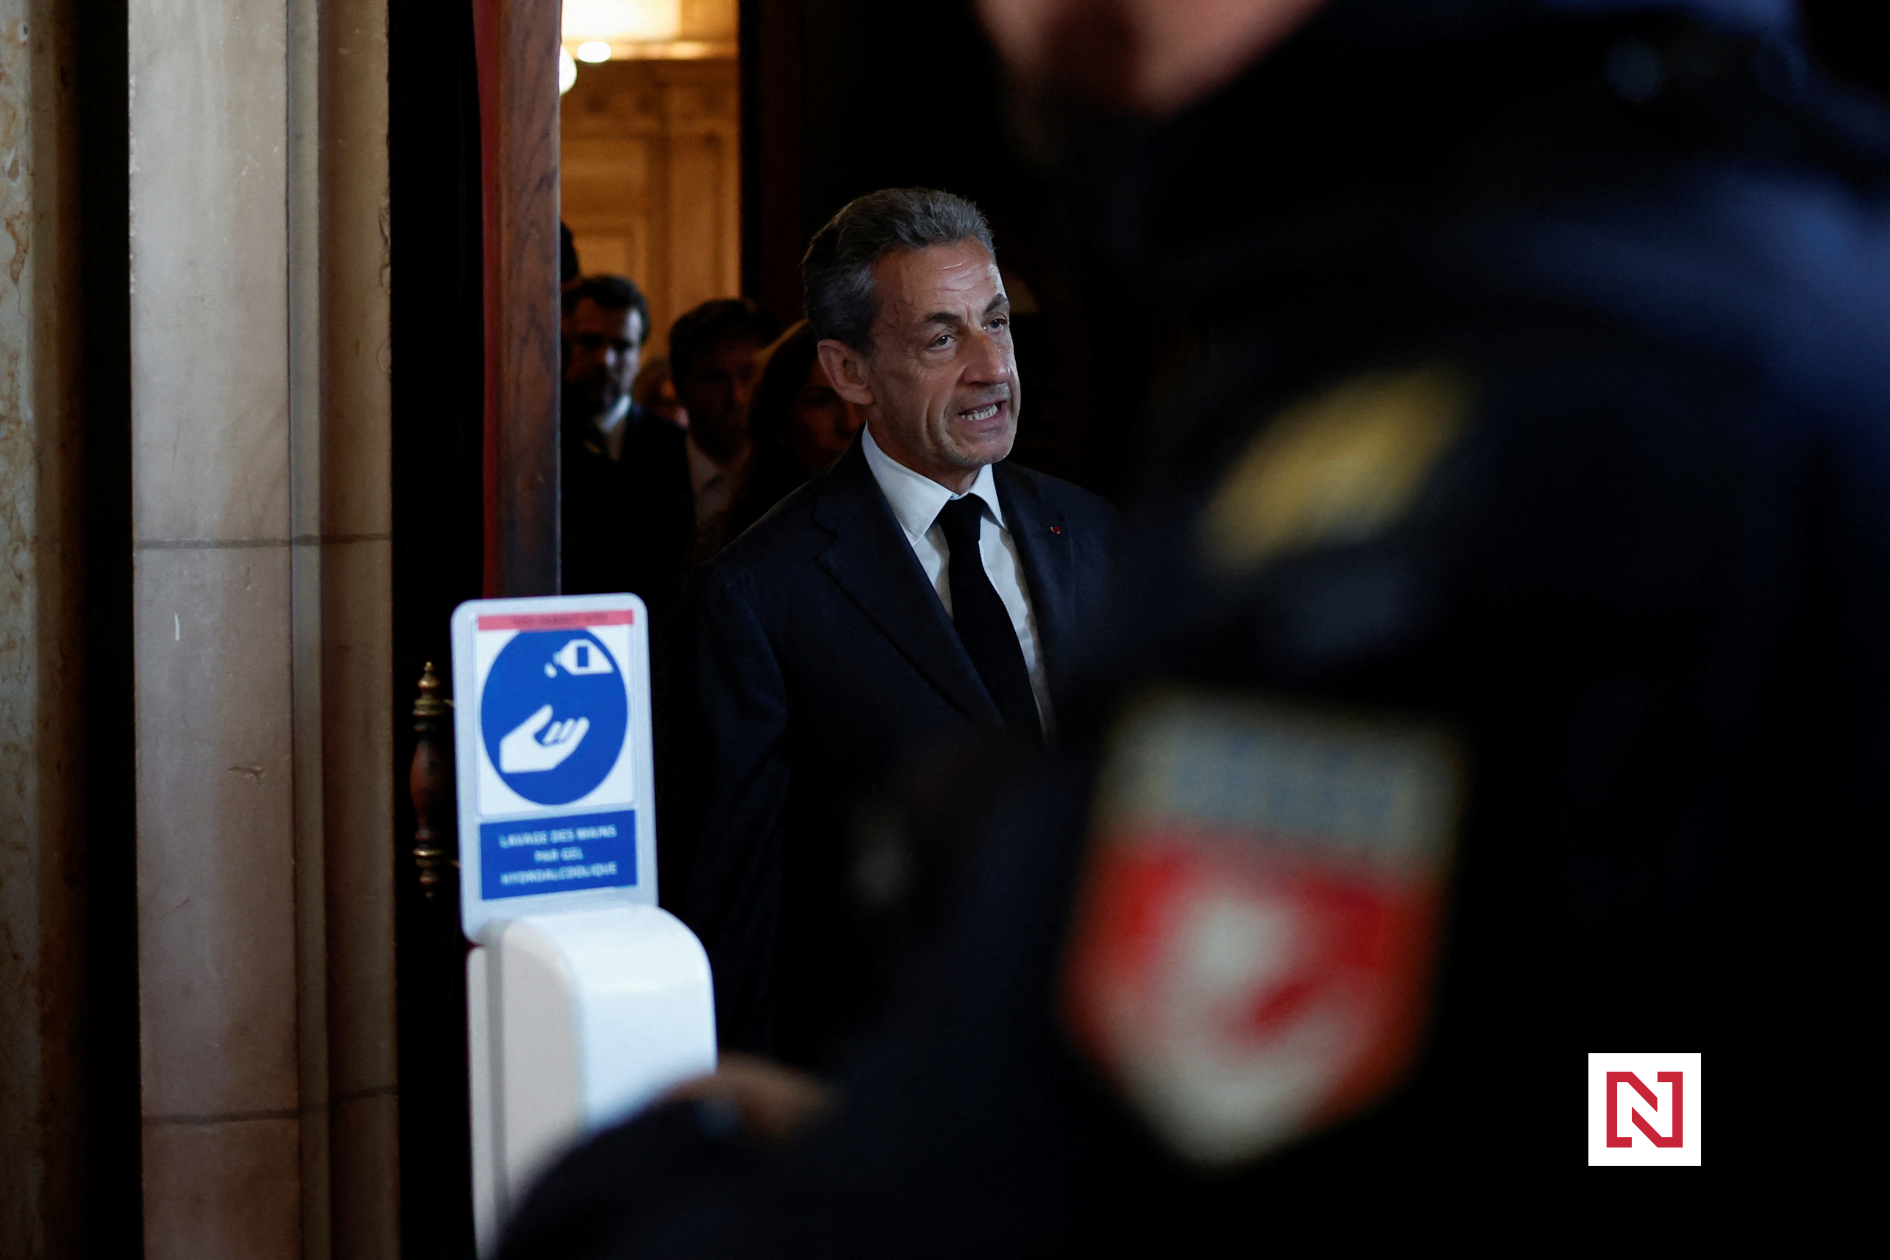 Un président « hyperactif » assigné à résidence.  Sarkozy est hanté par une affaire criminelle, mais il a toujours de l’influence dans la politique française